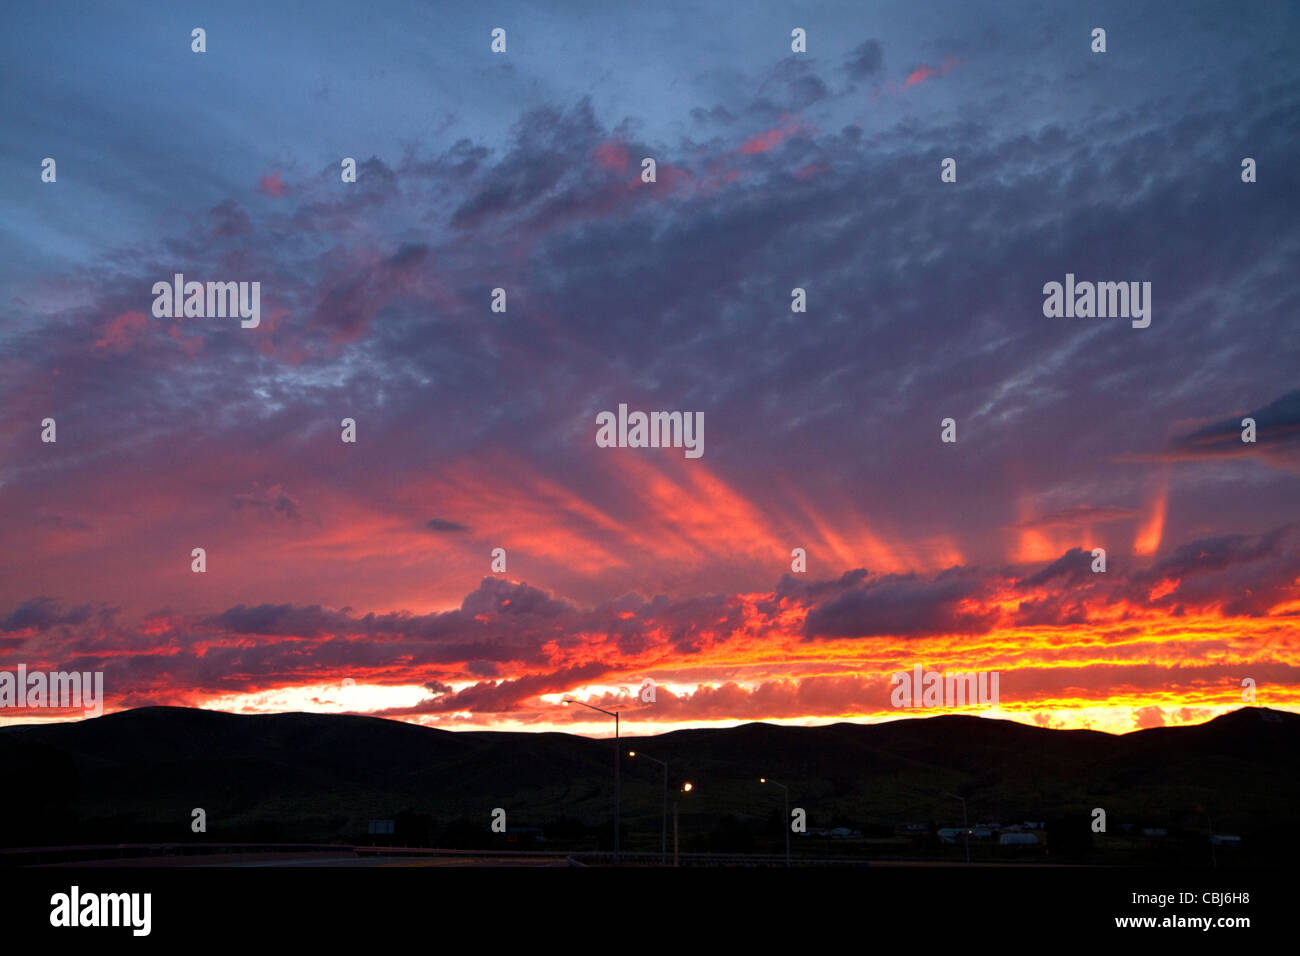 Sonnenuntergang an der Interstate 15 in der Nähe von Dillon, Montana, USA. Stockfoto